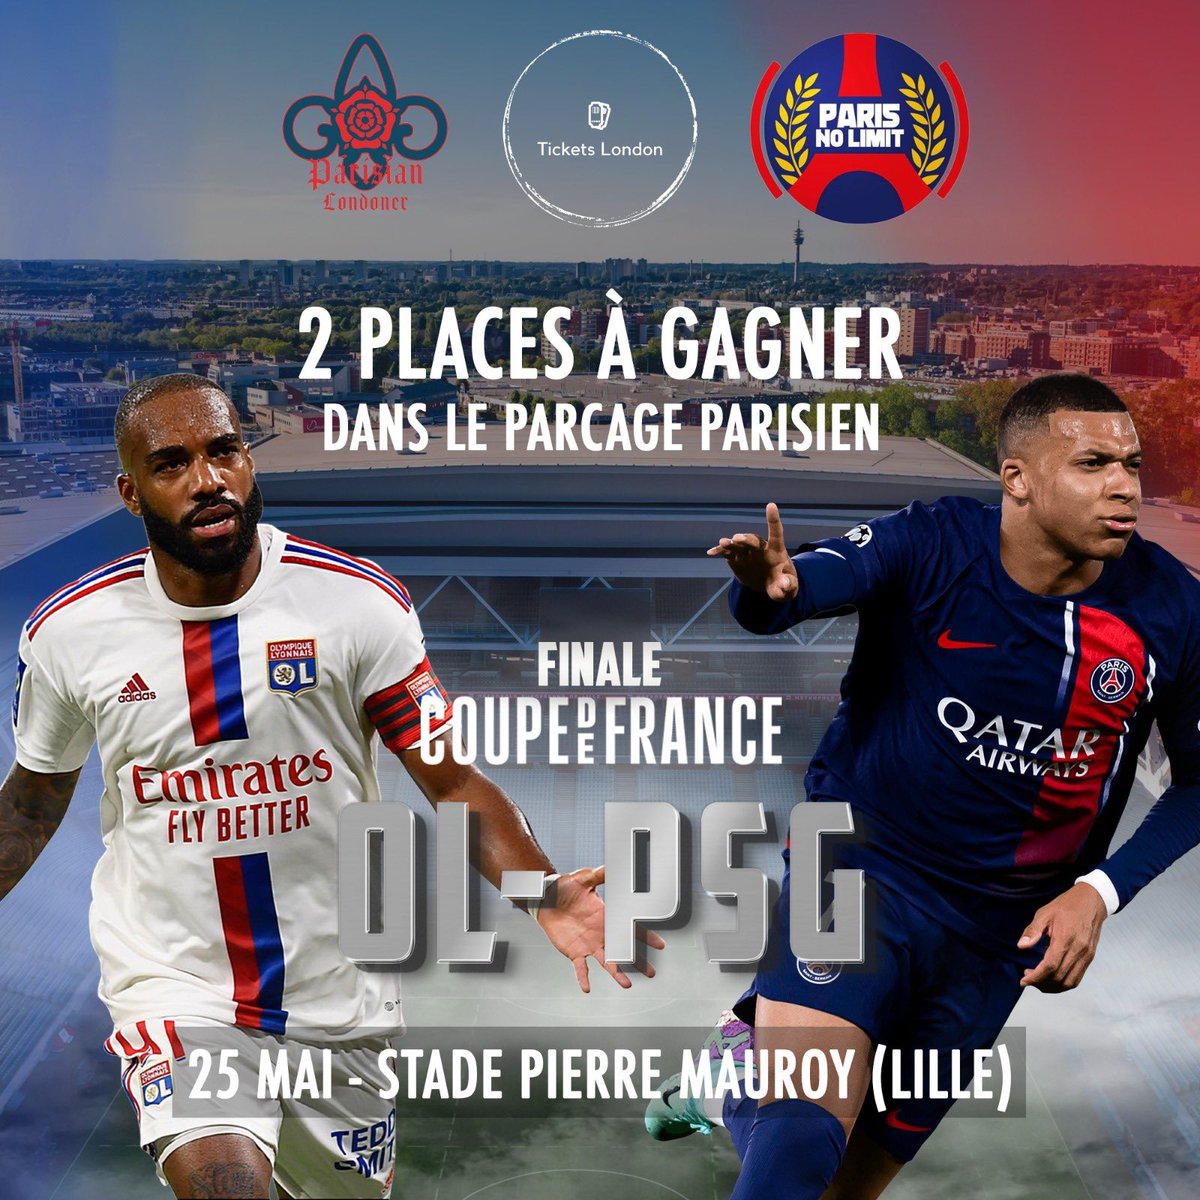 ❤️💙🚨 GIVEAWAY : Gagnez 2️⃣ PLACES pour la FINALE de la Coupe de France LYON-PSG à Lille le samedi 25 mai ! 🏆🇫🇷

1️⃣ Like & RT 
2️⃣ Follow @Xparisnolimit et @ParisianLDN 

📅 Annonce du vainqueur le 22 mai à 19h00.

Bonne chance ! 🙏🏽